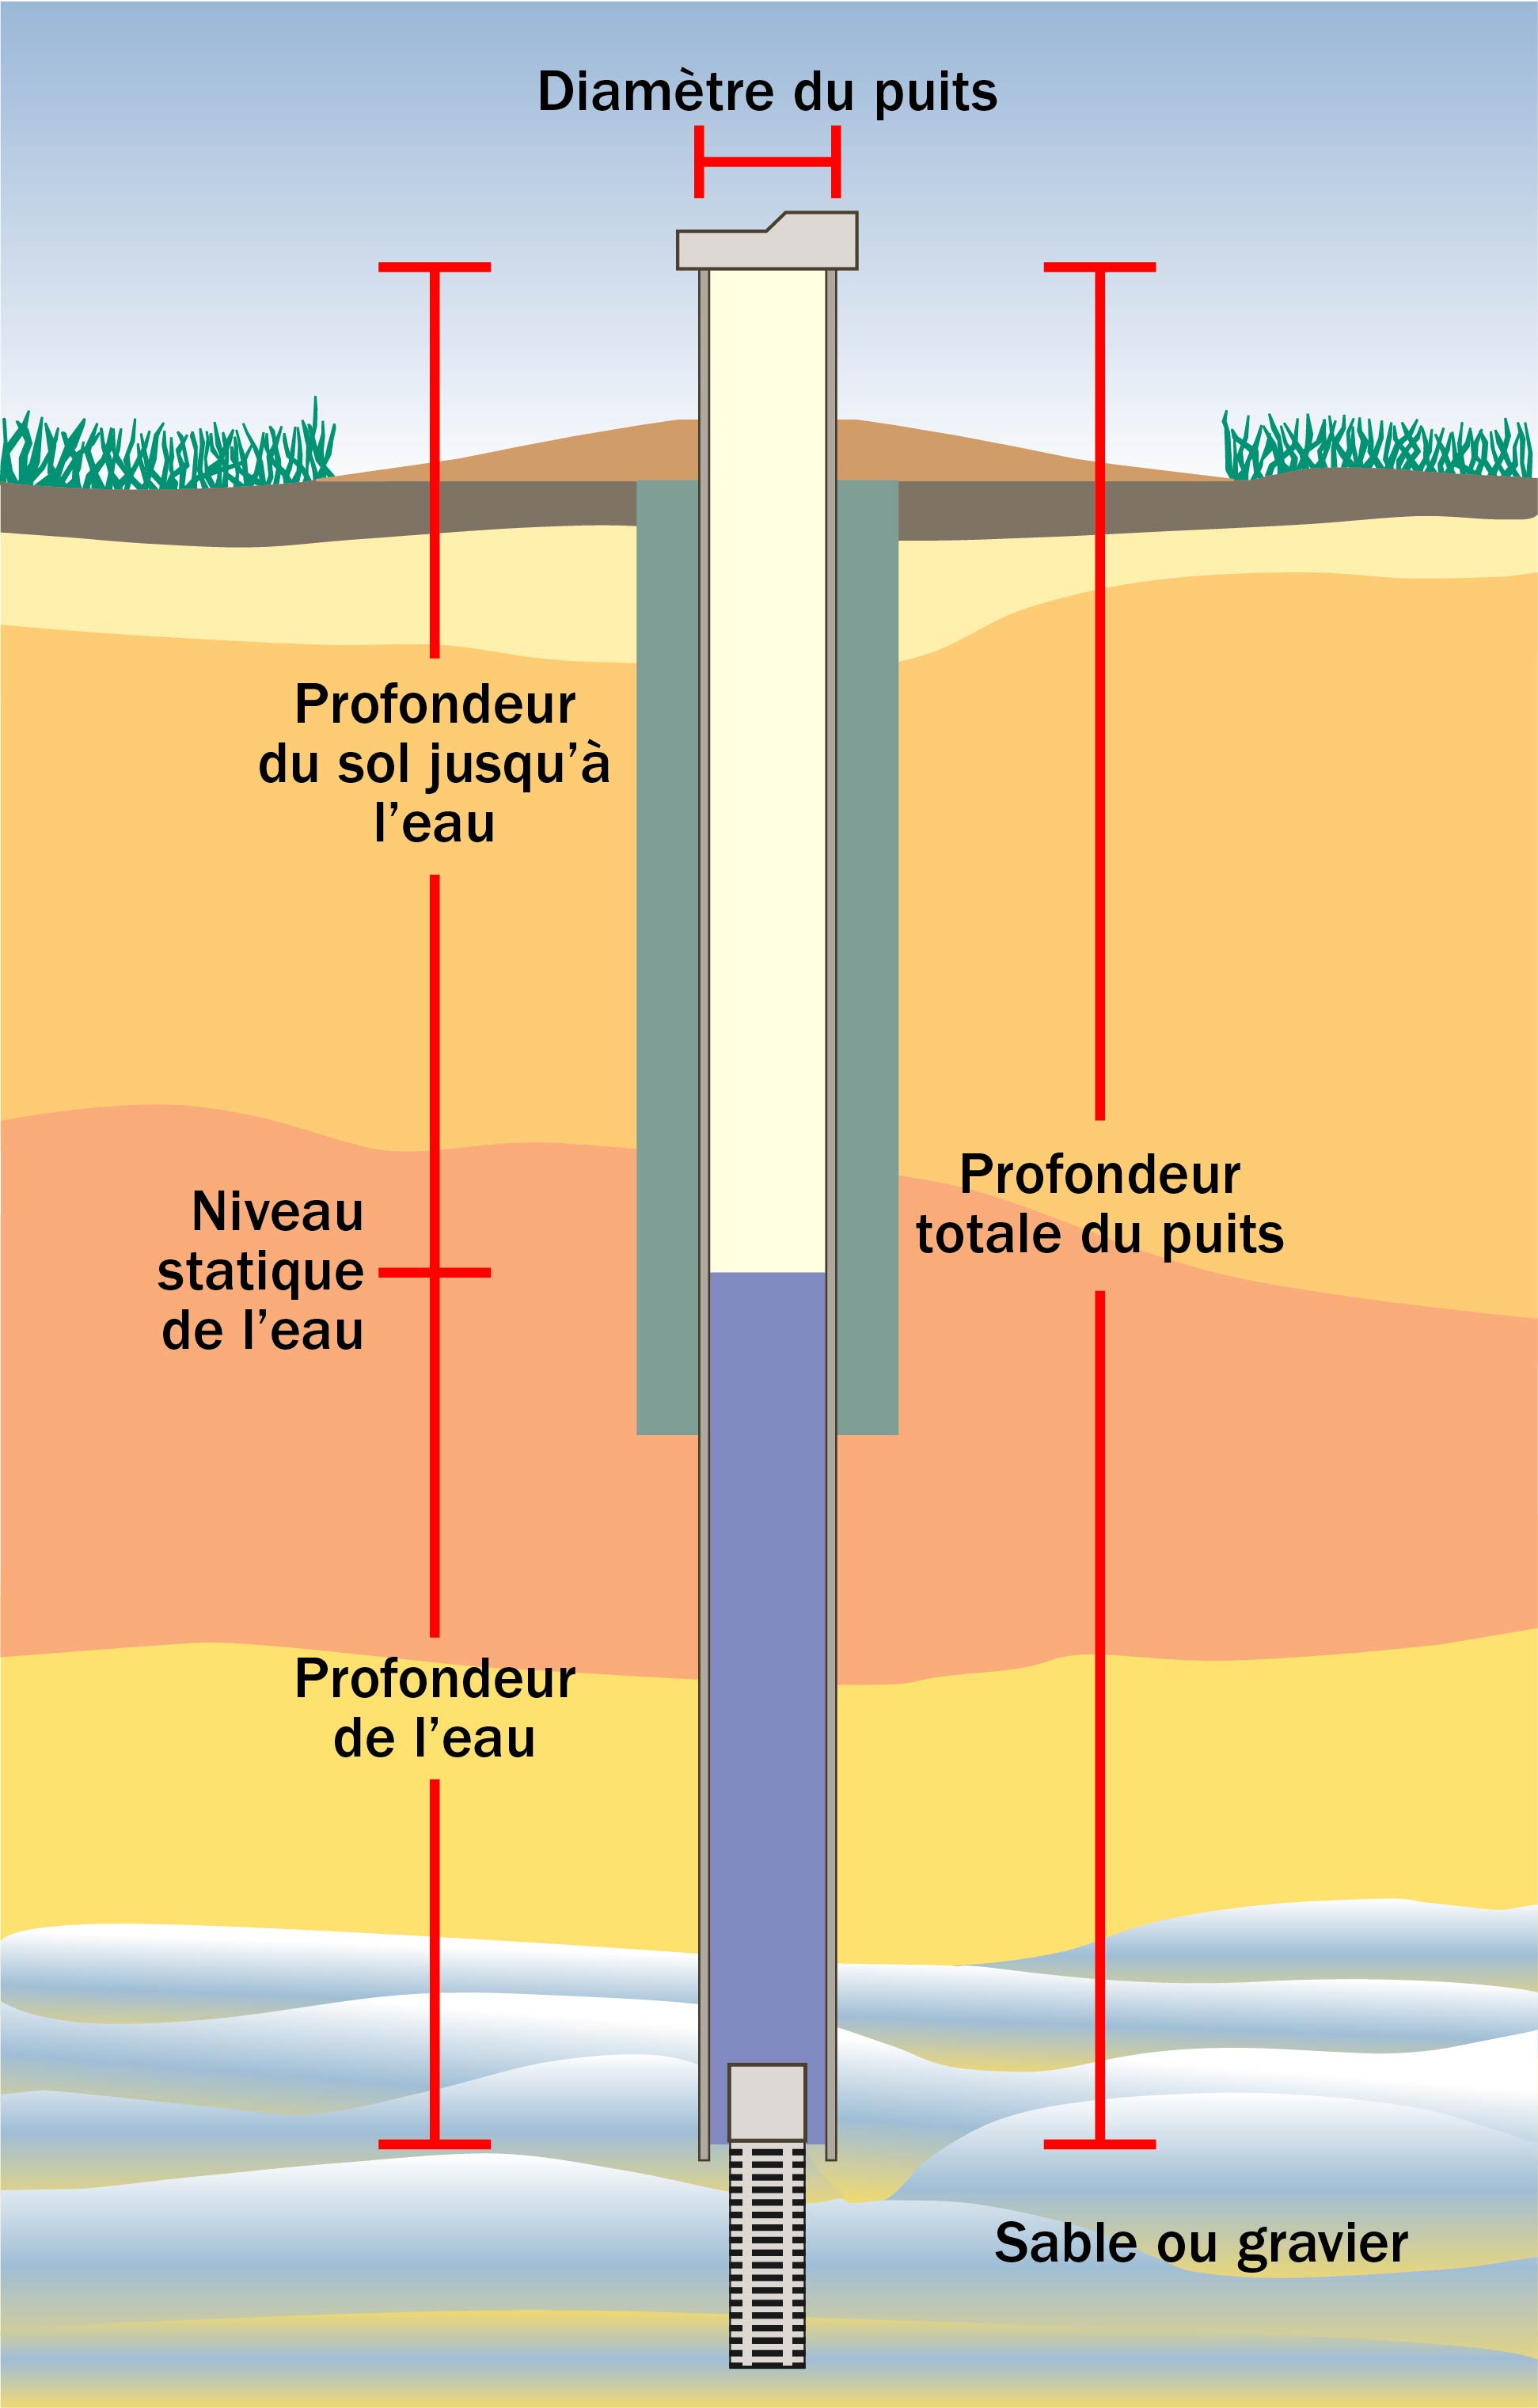 Une vue transversale d’un puits et des différentes profondeurs jusqu’à l’eau et à la couche sous-jacente de gravier ou de sable.